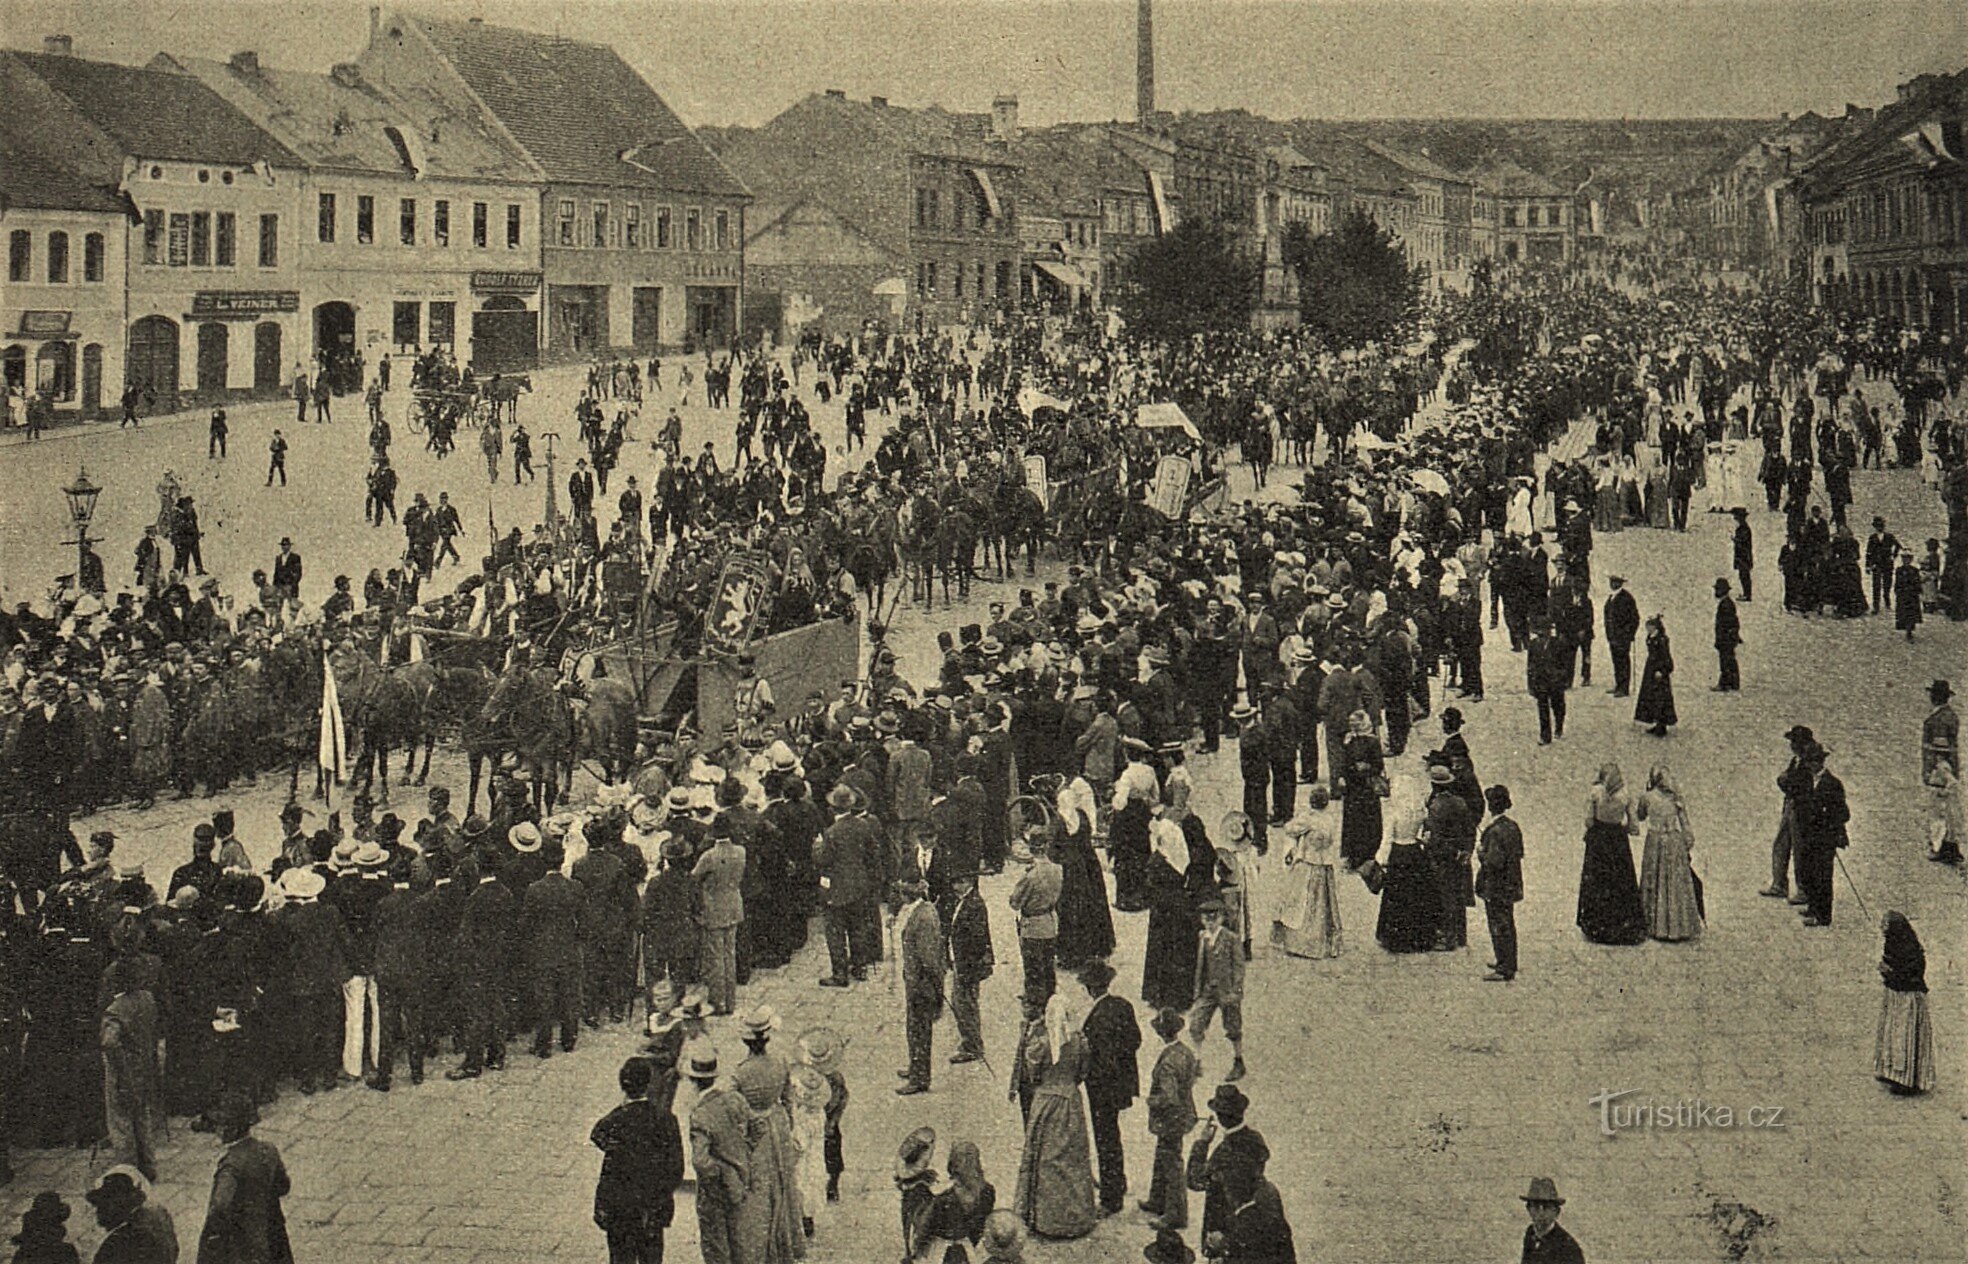 Celebración husita en Hořice en 1903